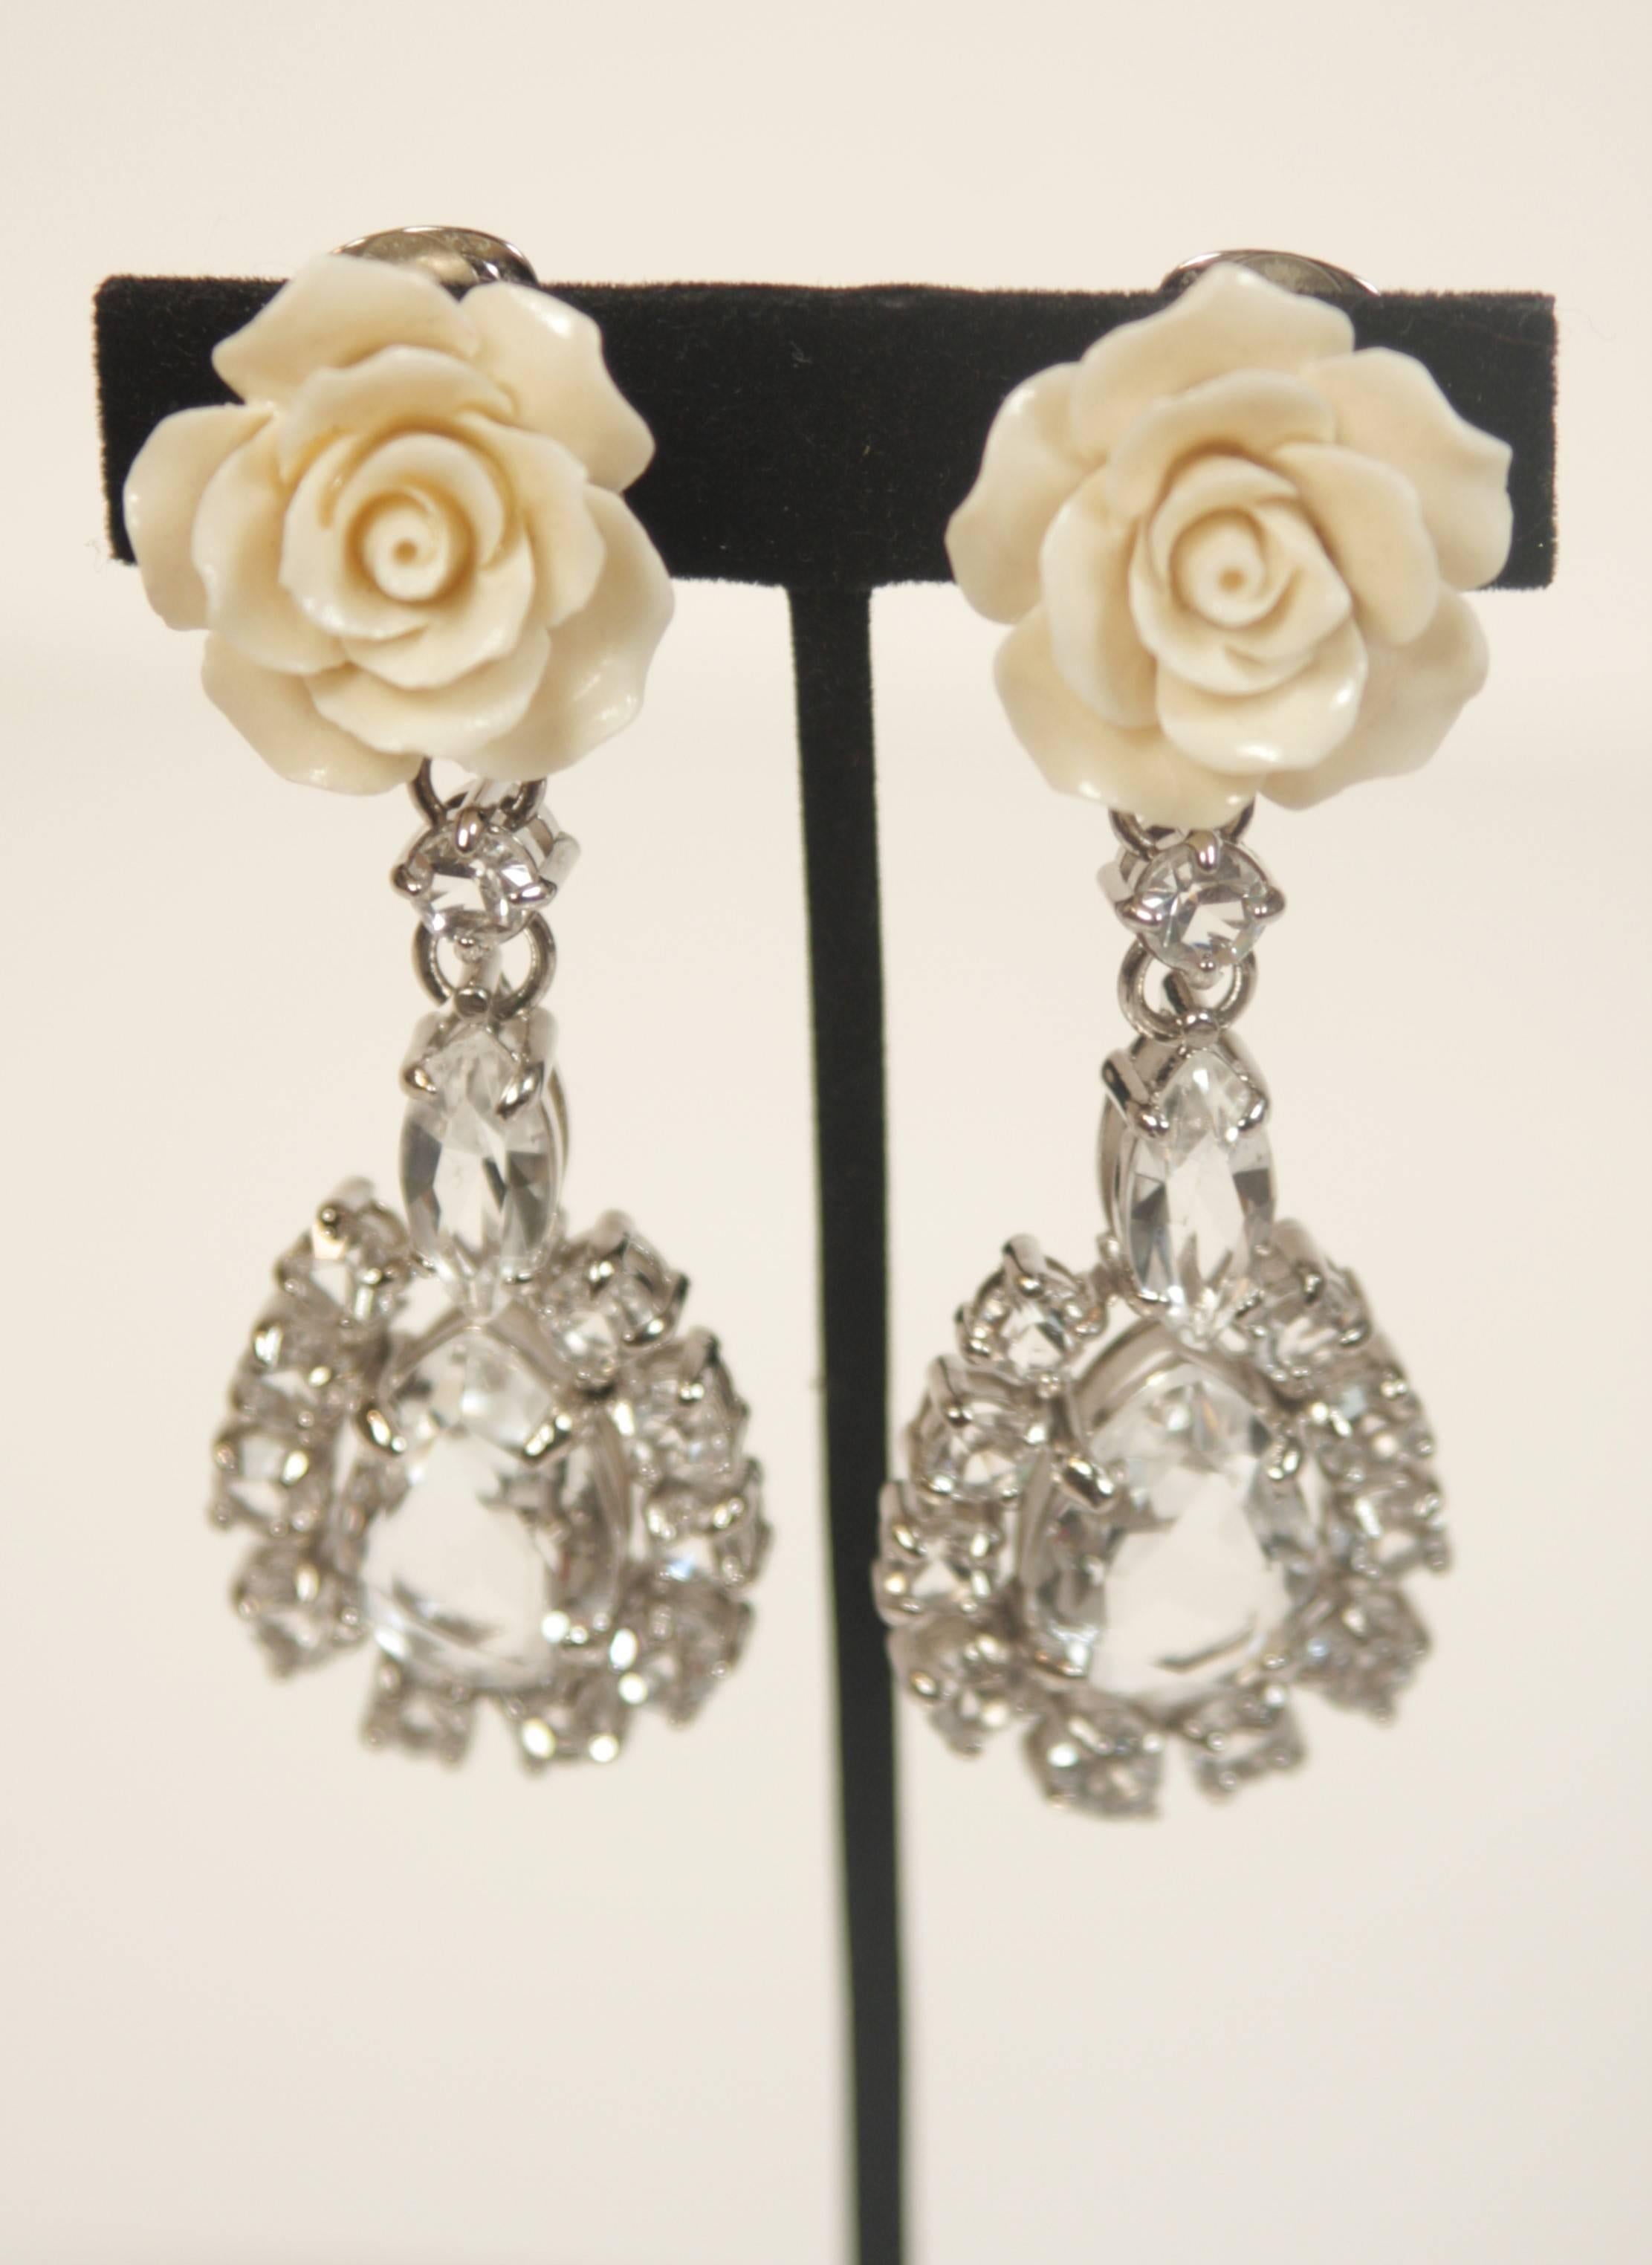 prada earrings rose